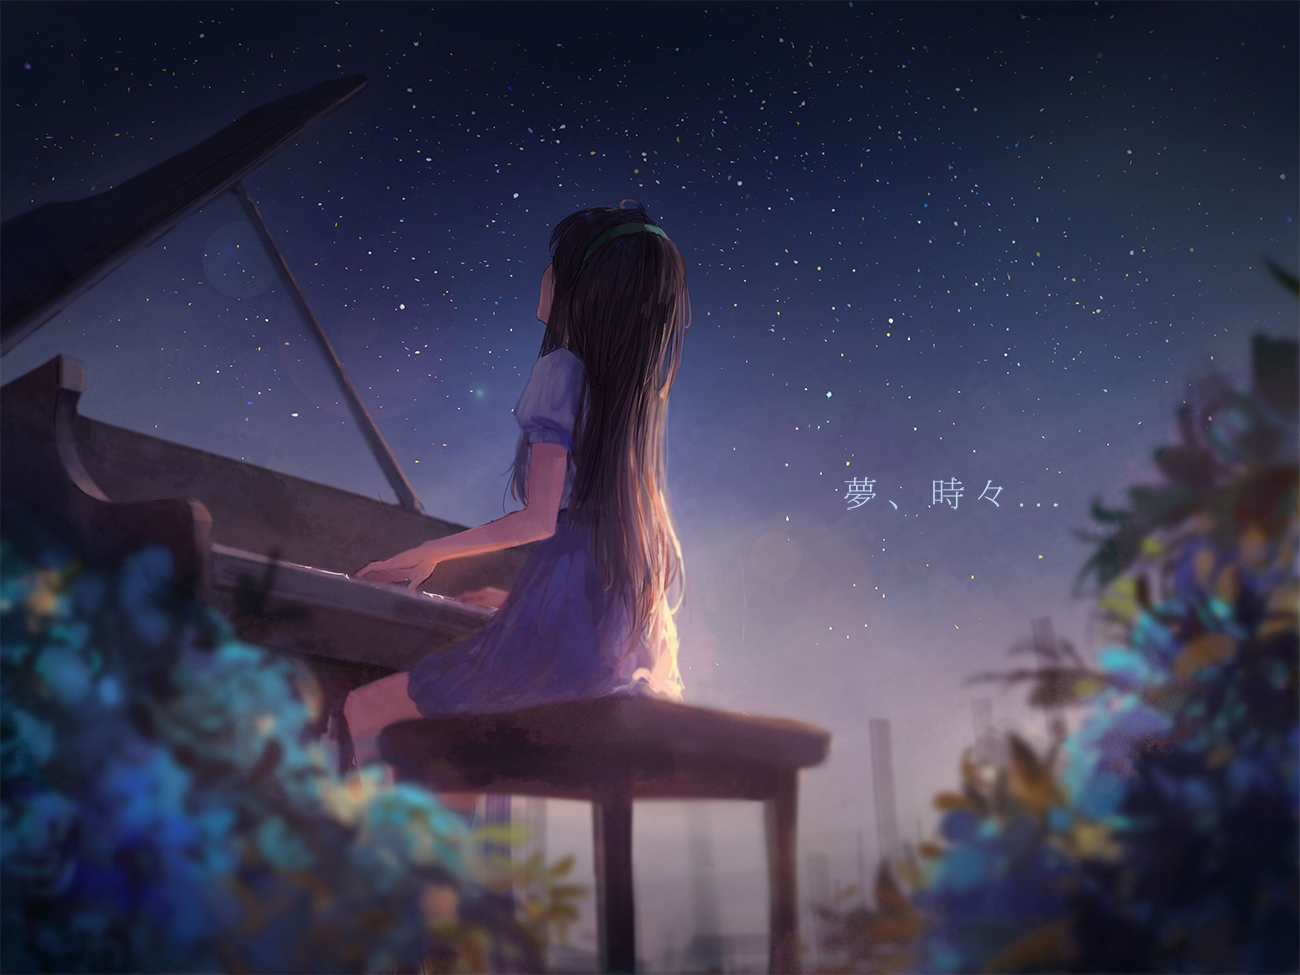 Mes Piano Anime Anime Girls Music Musical Instrument Brunette Sitting Stars Sky Sishenfan 1300x975